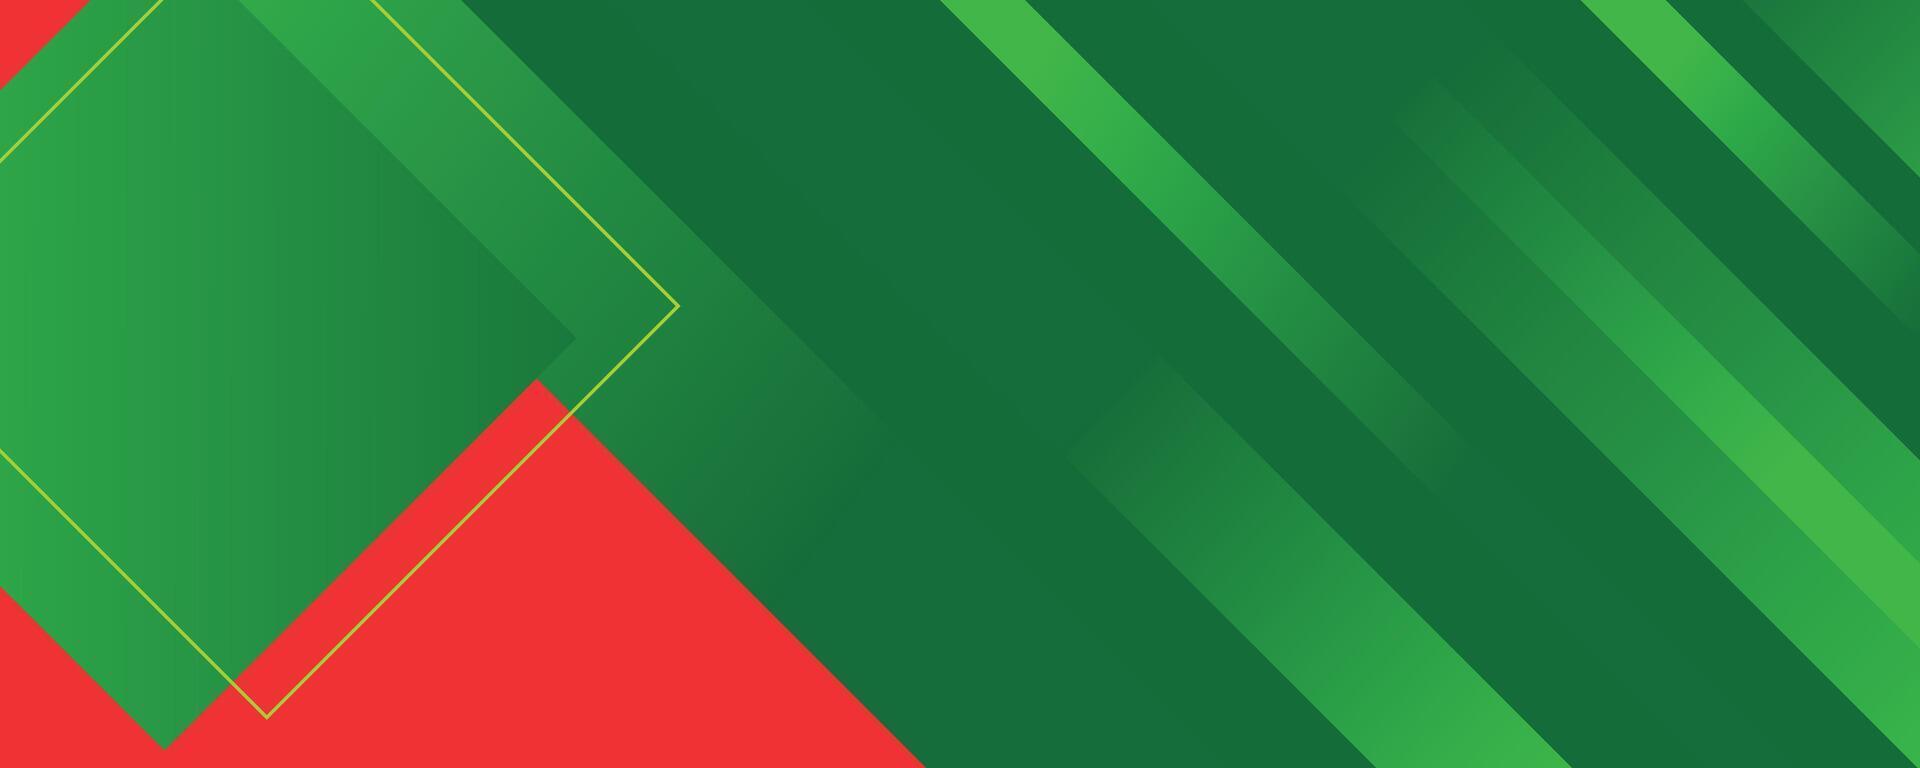 abstrakt grön och röd geometrisk och Ränder baner bakgrund vektor